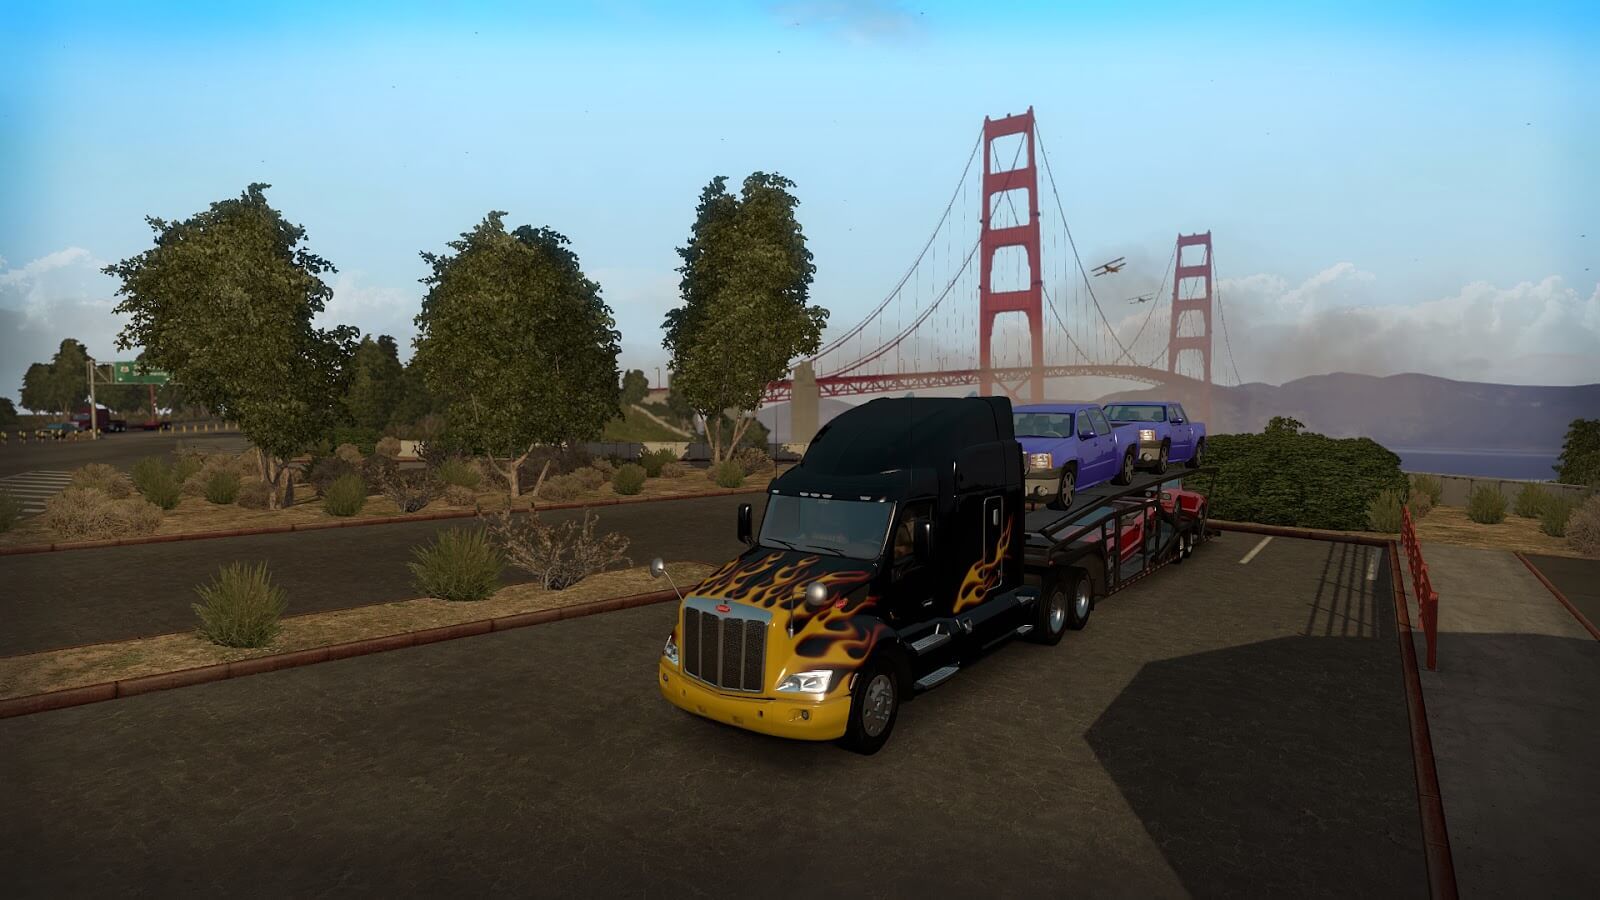 american truck simulator download mac free